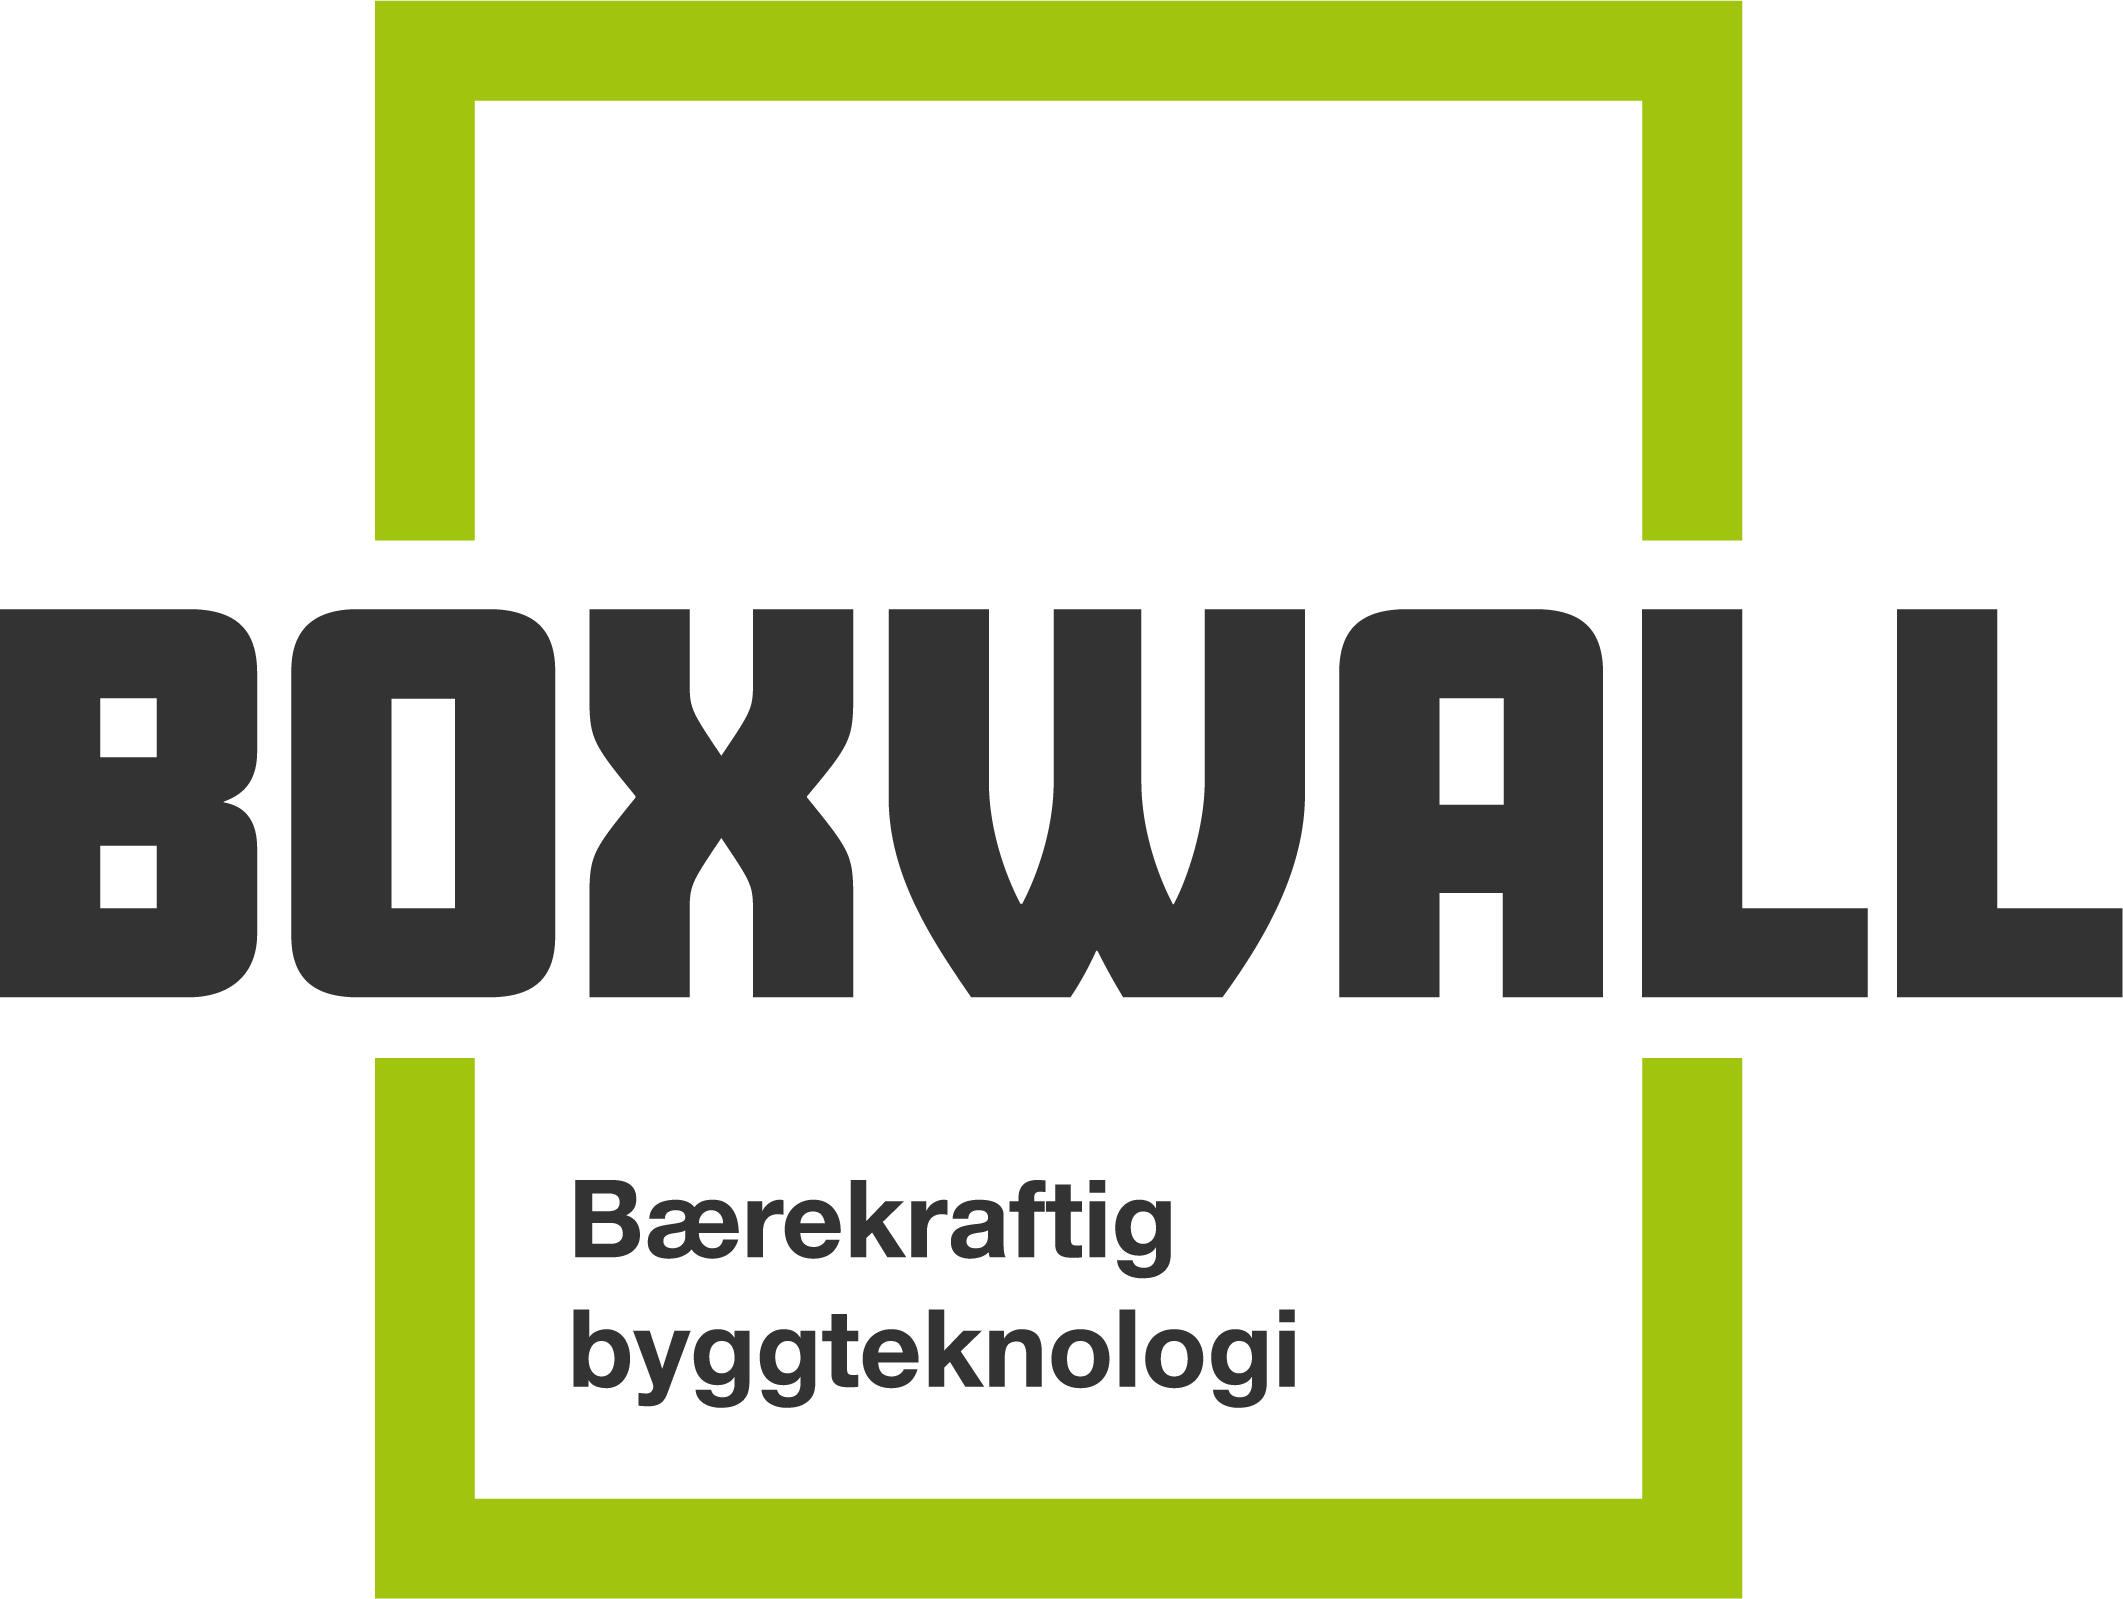 Boxwall logo